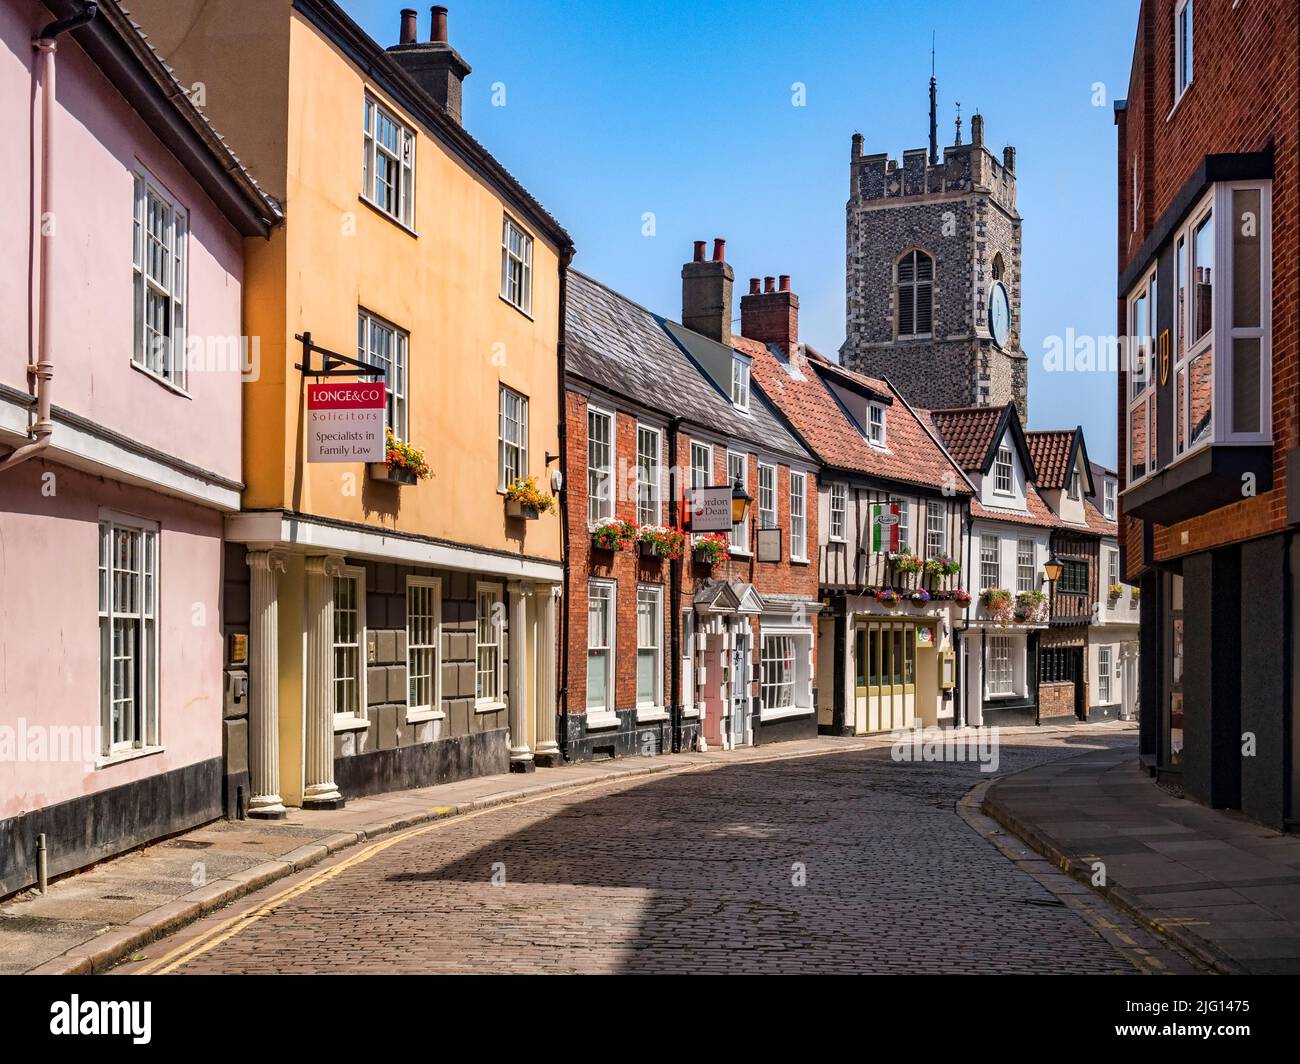 29 de junio de 2019: Norwich, Norfolk - Princes Street es una histórica calle empedrada en el centro de Norwich, Norfolk, con muchos edificios antiguos e interesantes Foto de stock